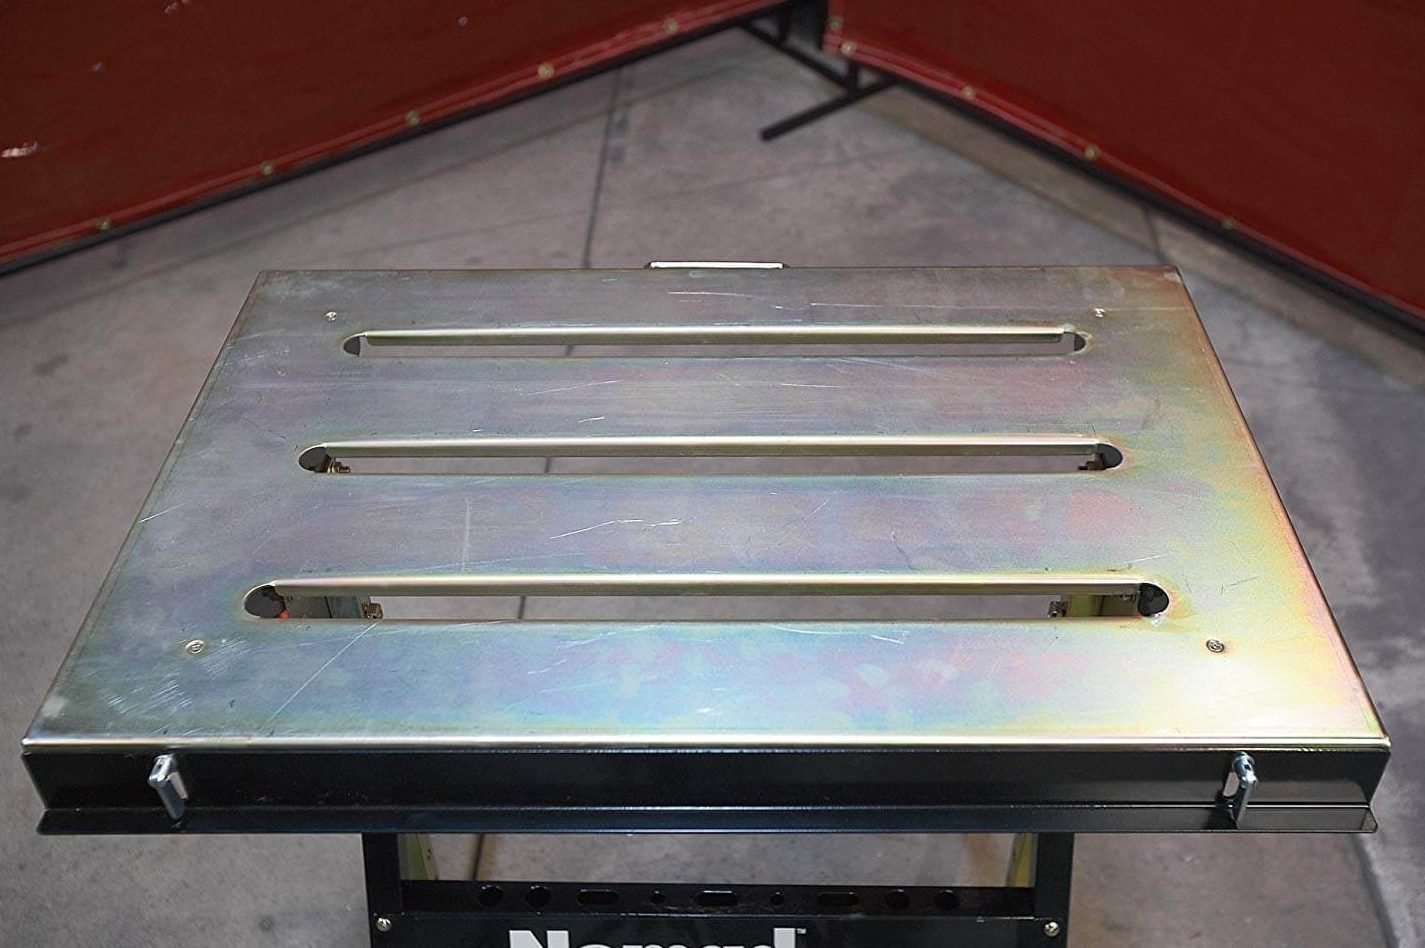 welding table